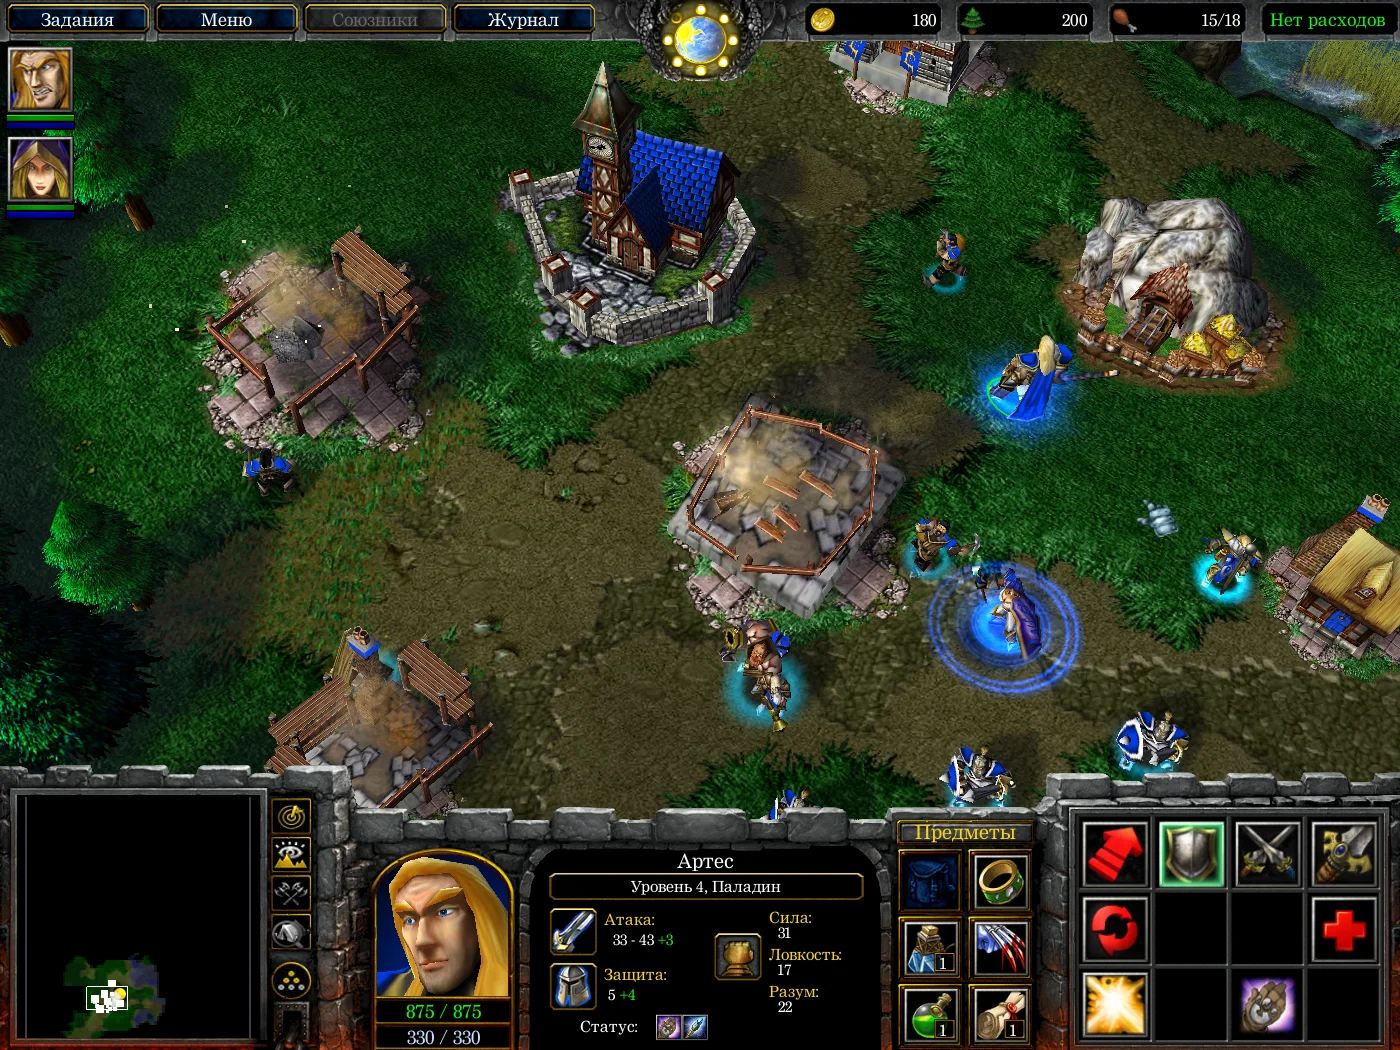 Мнение. Warcraft III гораздо лучше работает как RPG, чем стратегия - фото 3